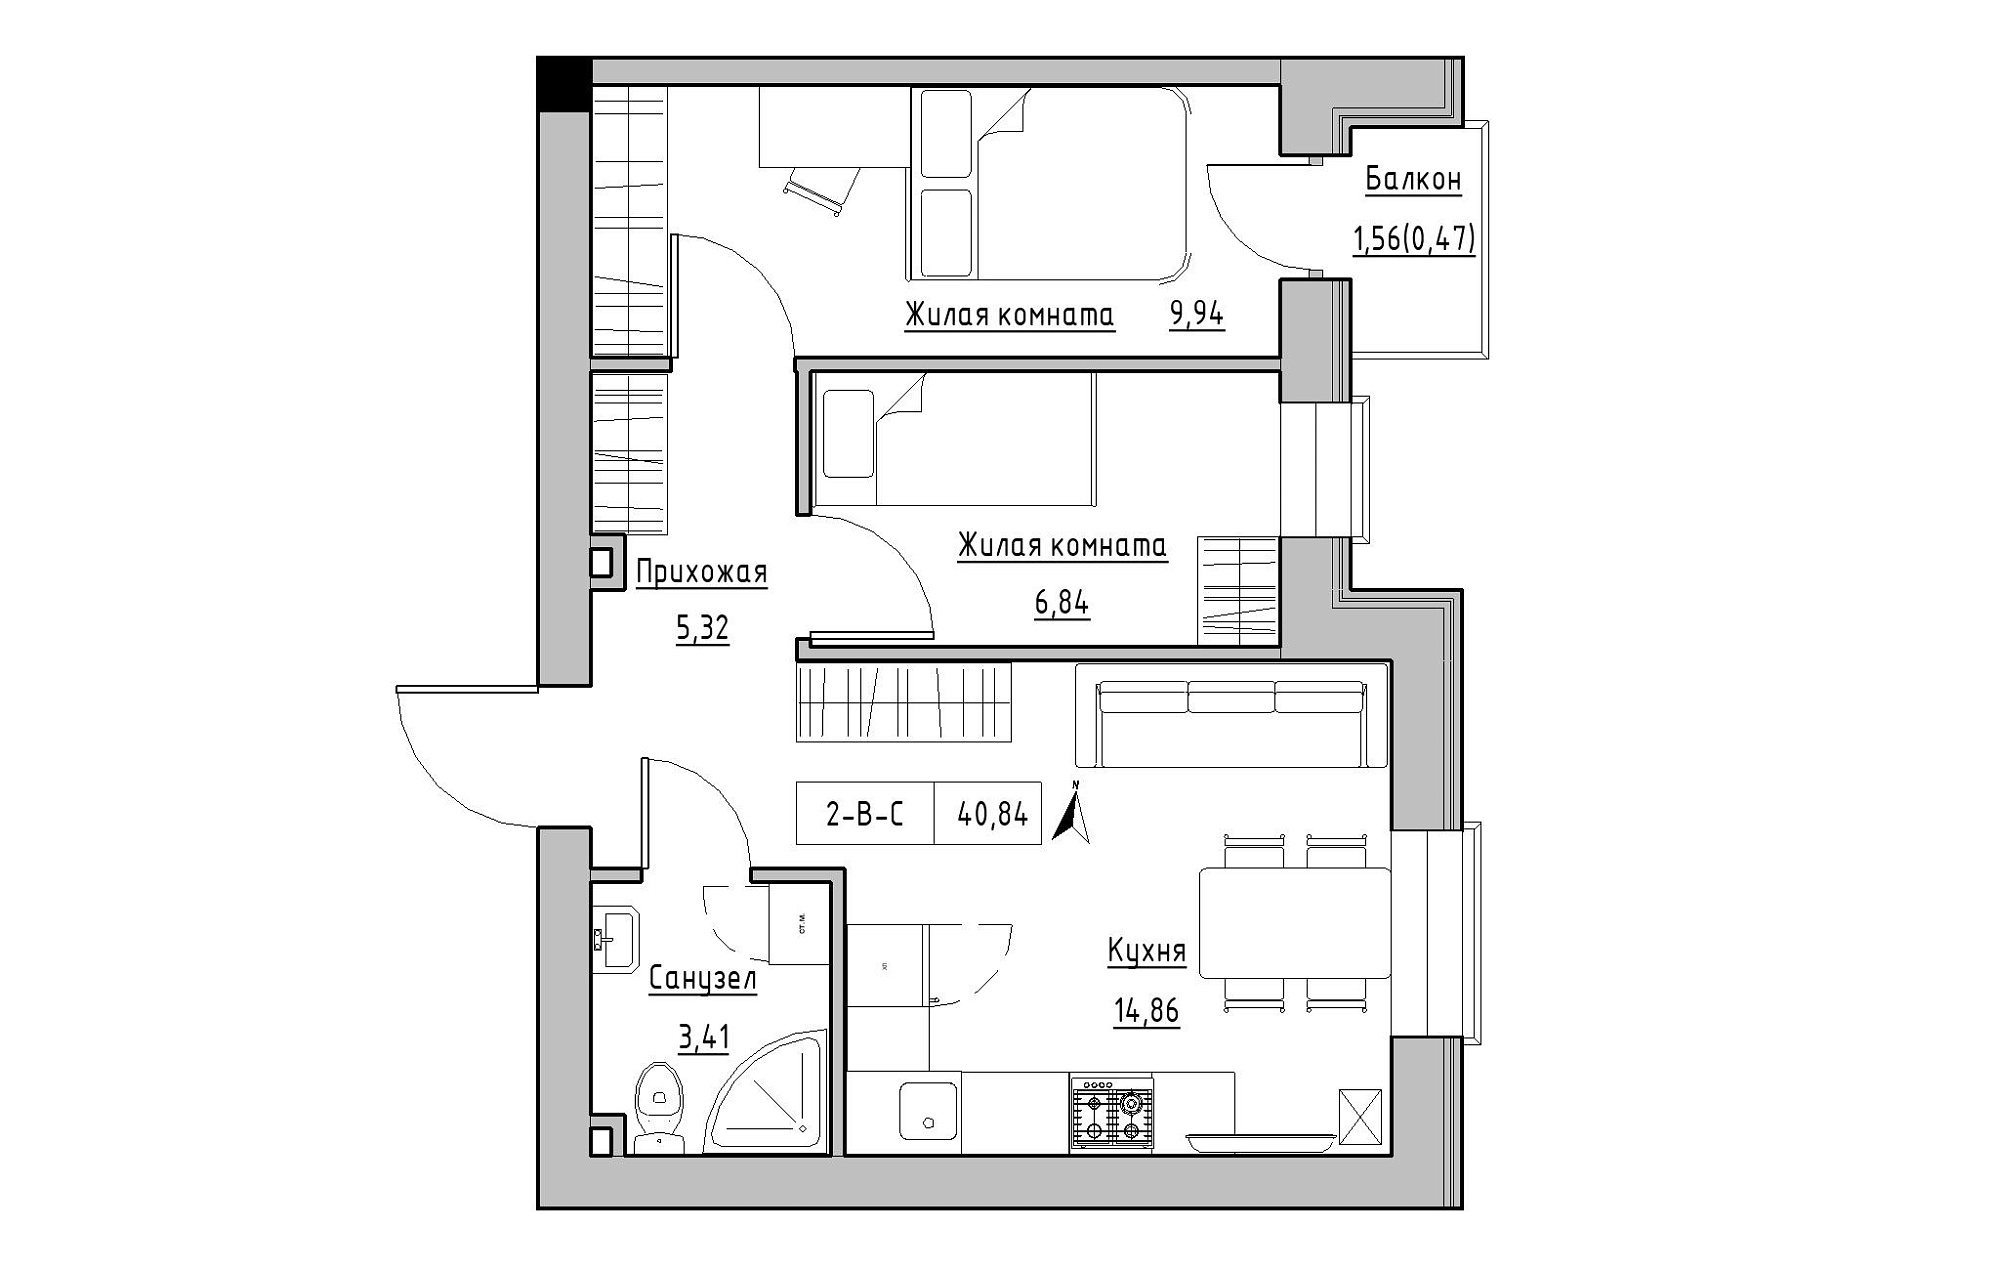 Планировка 2-к квартира площей 40.84м2, KS-019-04/0006.